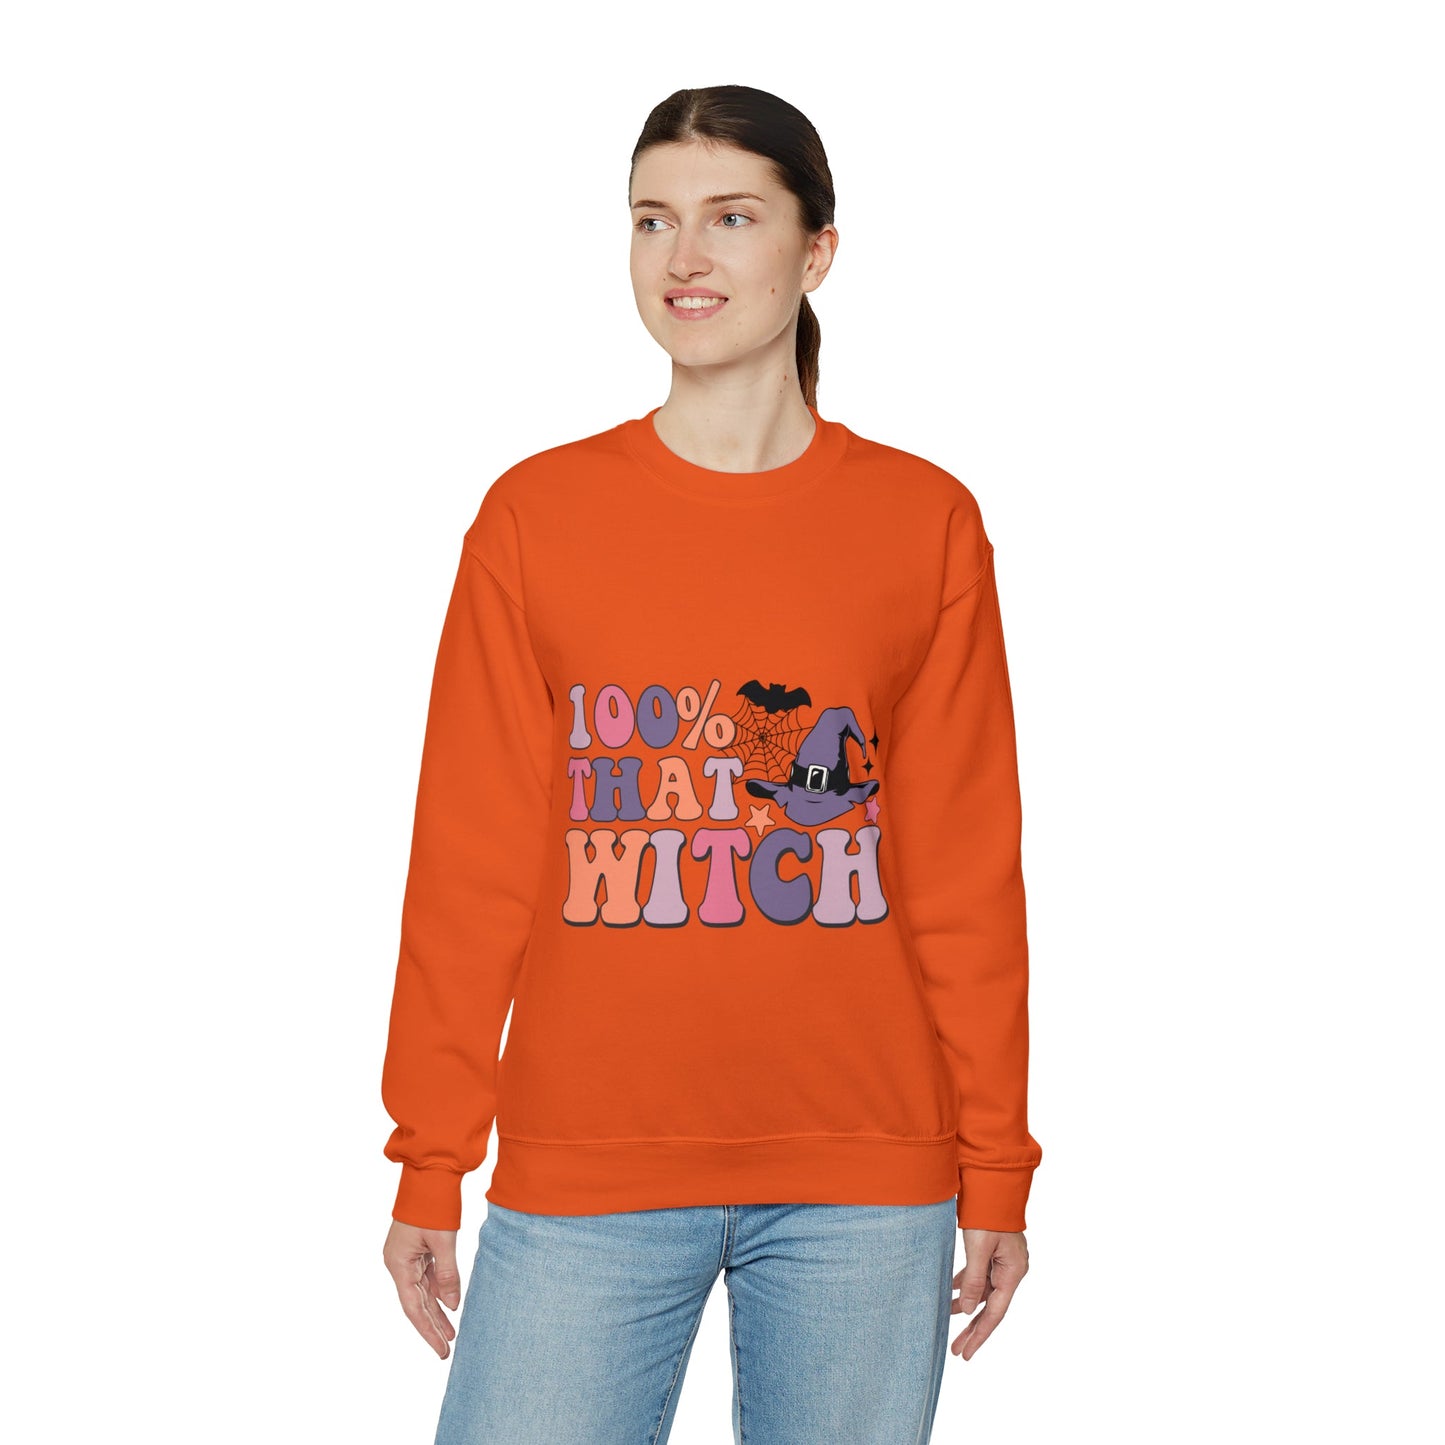 100% That Witch Sweatshirt - Designs by Lauren Ann